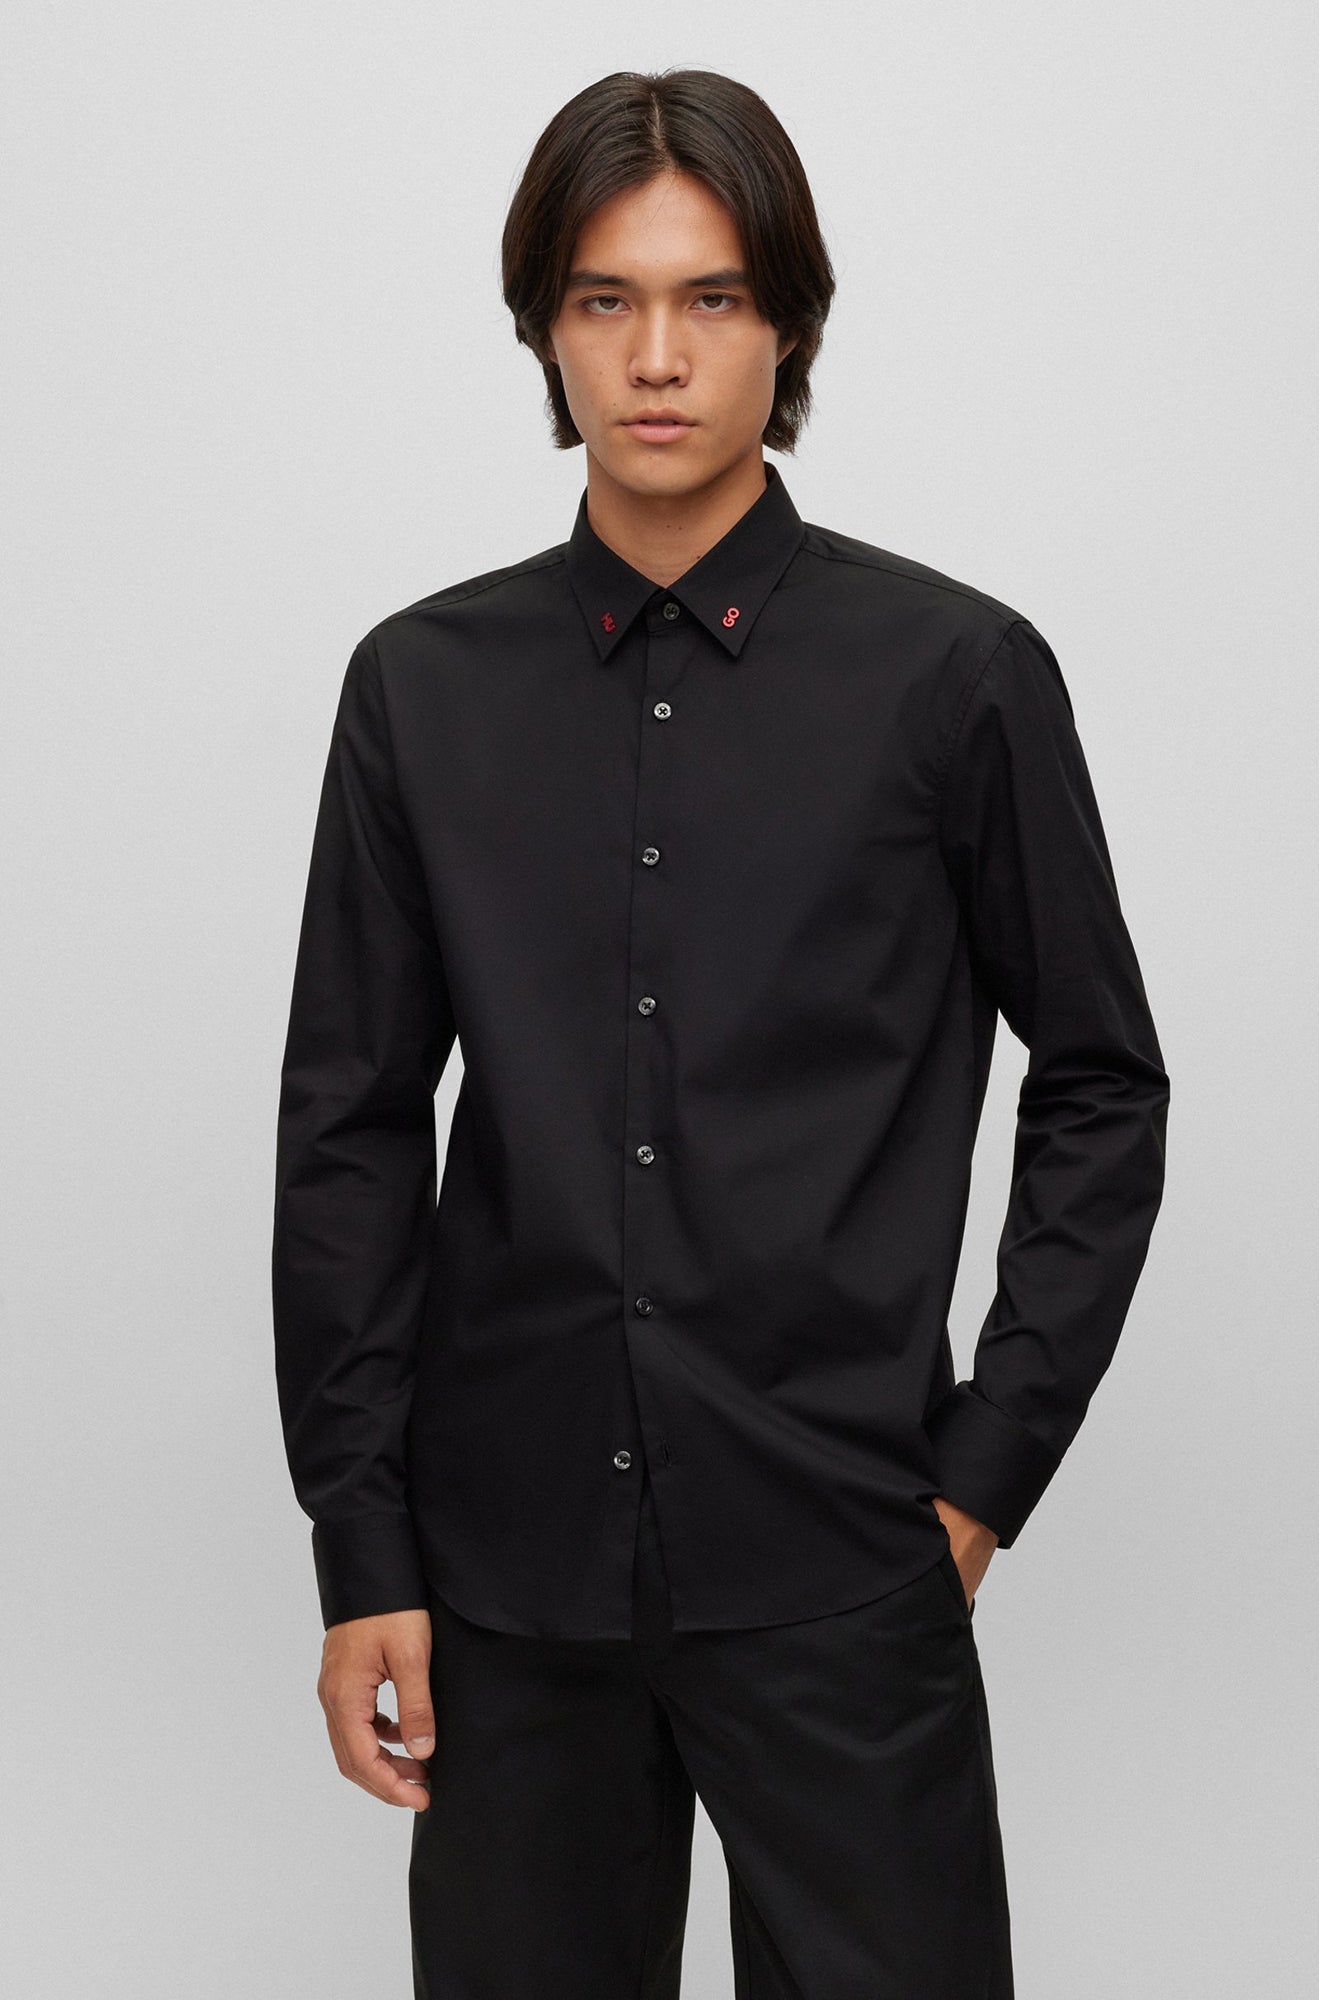 Chemise manches longues pour homme par HUGO BOSS | 50495900 Noir/001-BLACK | Boutique Vvög, vêtements mode pour homme et femme